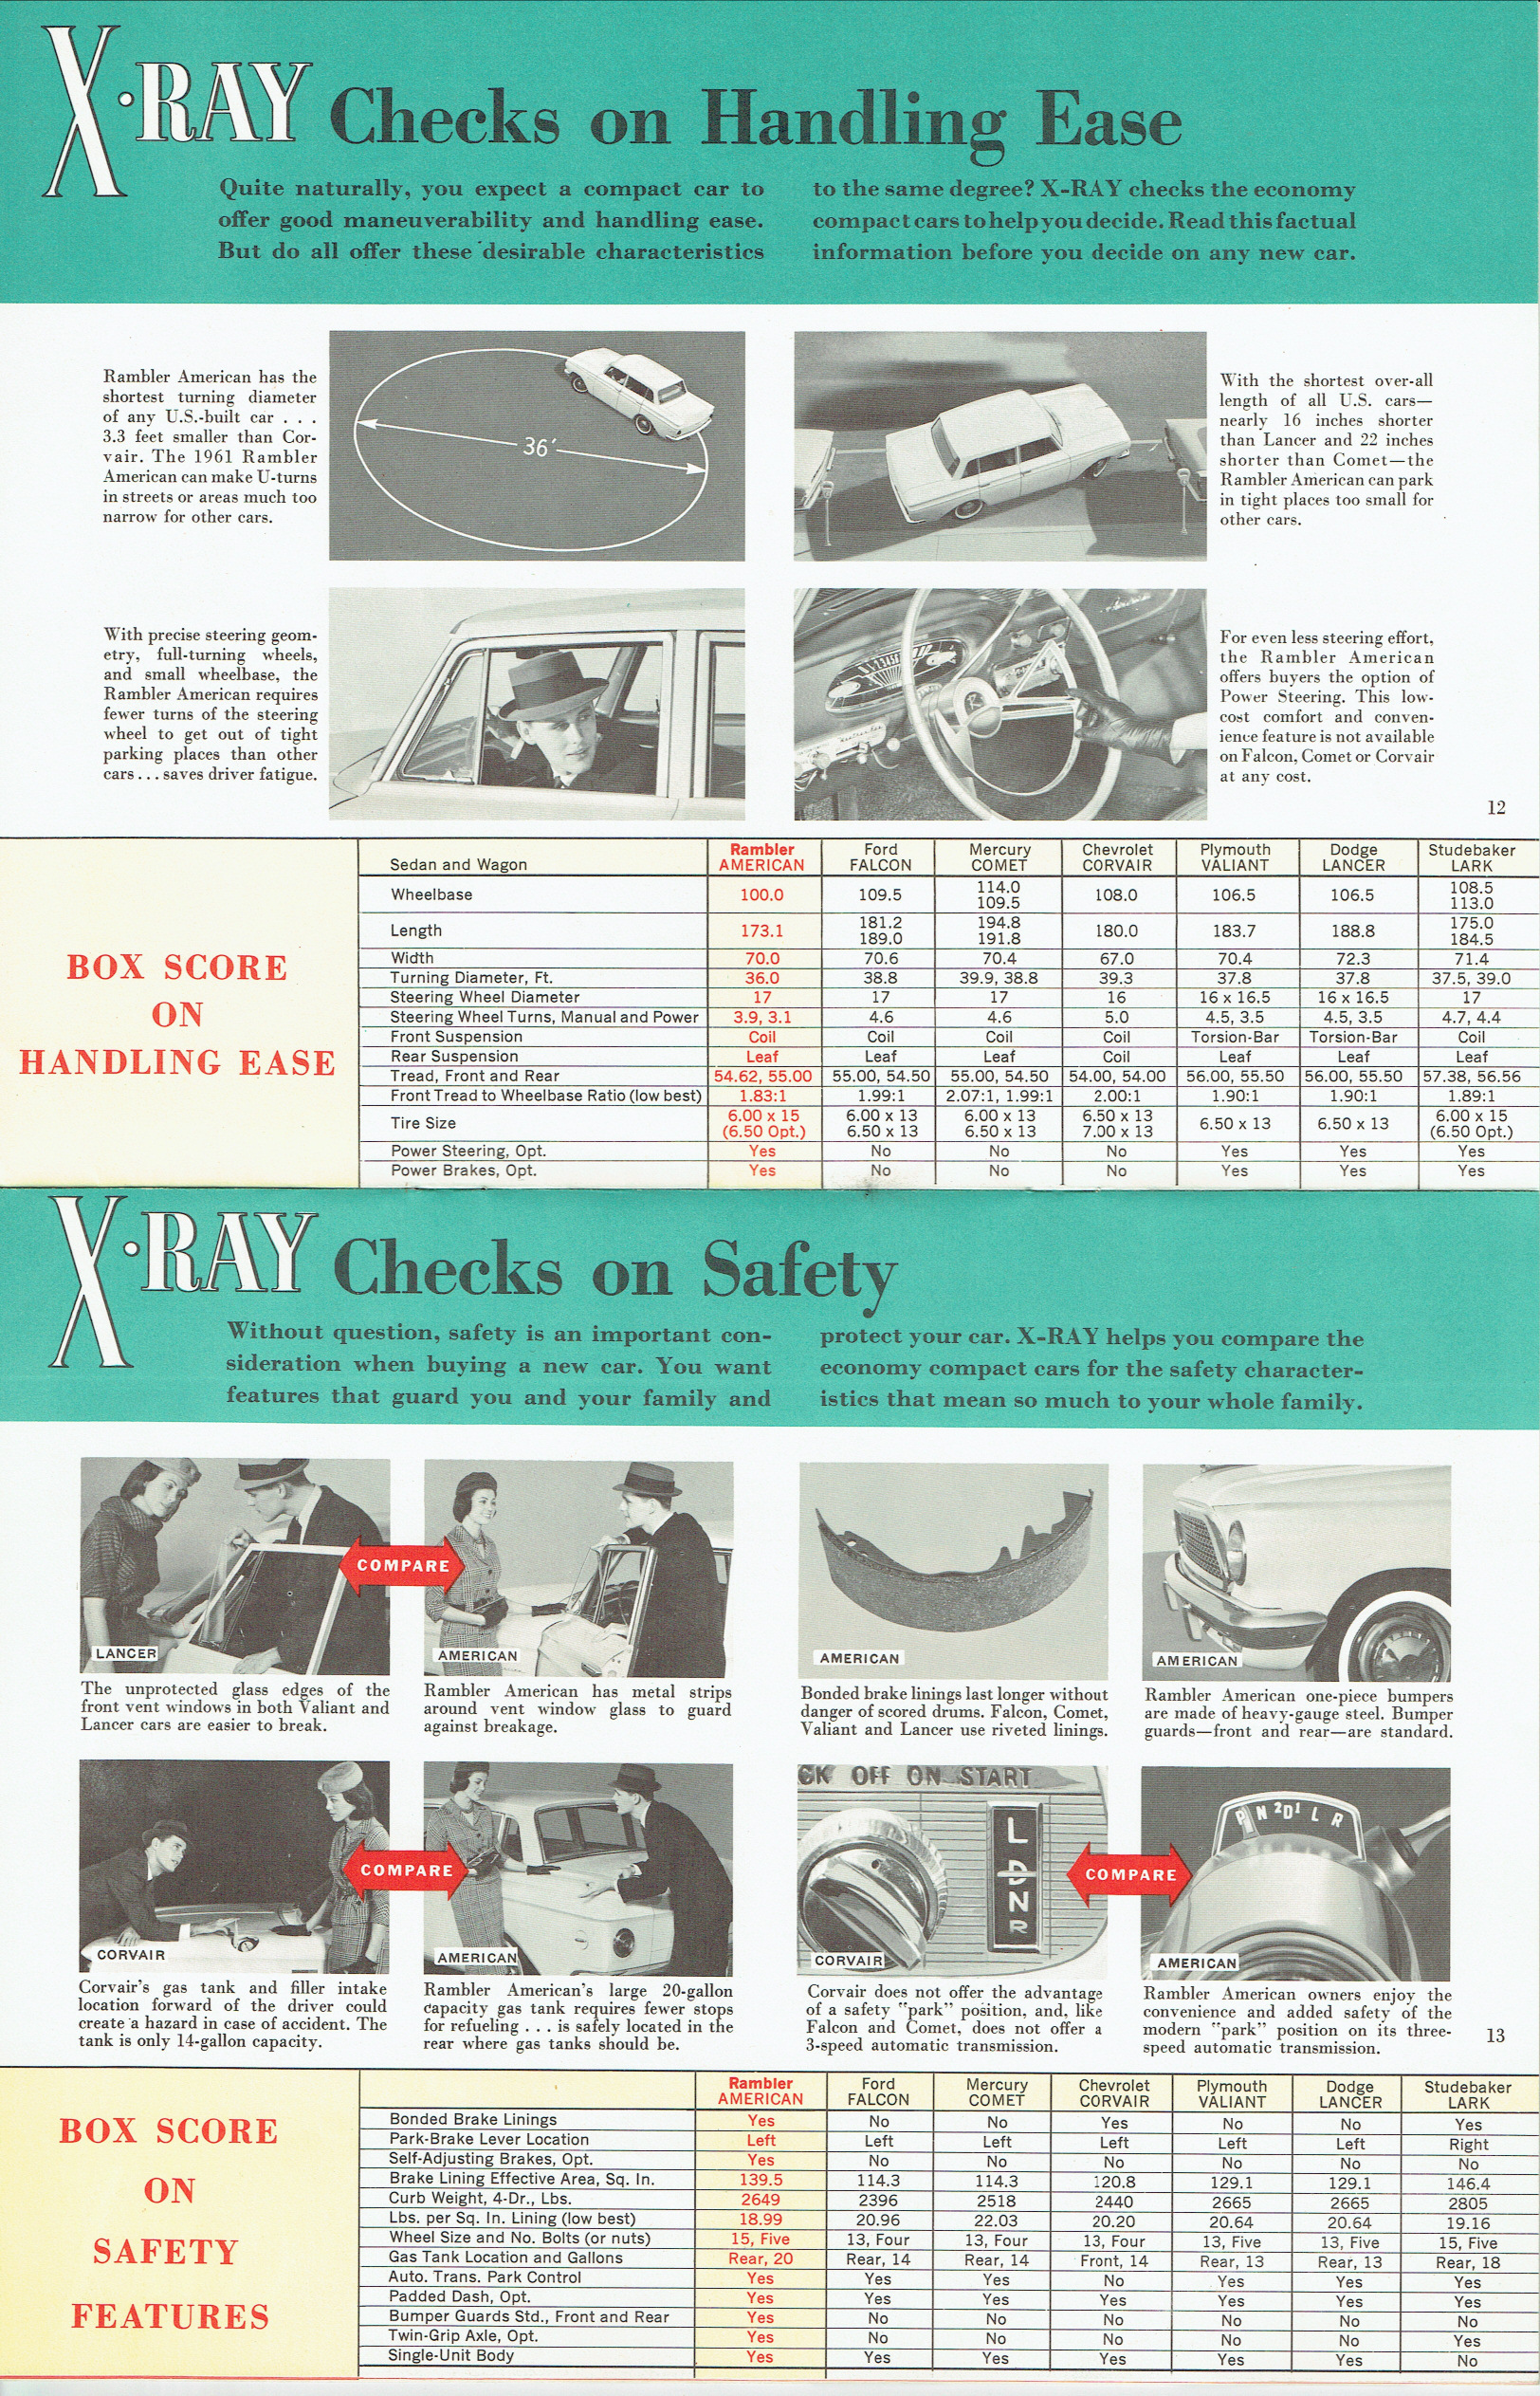 1961_X-Ray_Economy_Cars-12-13